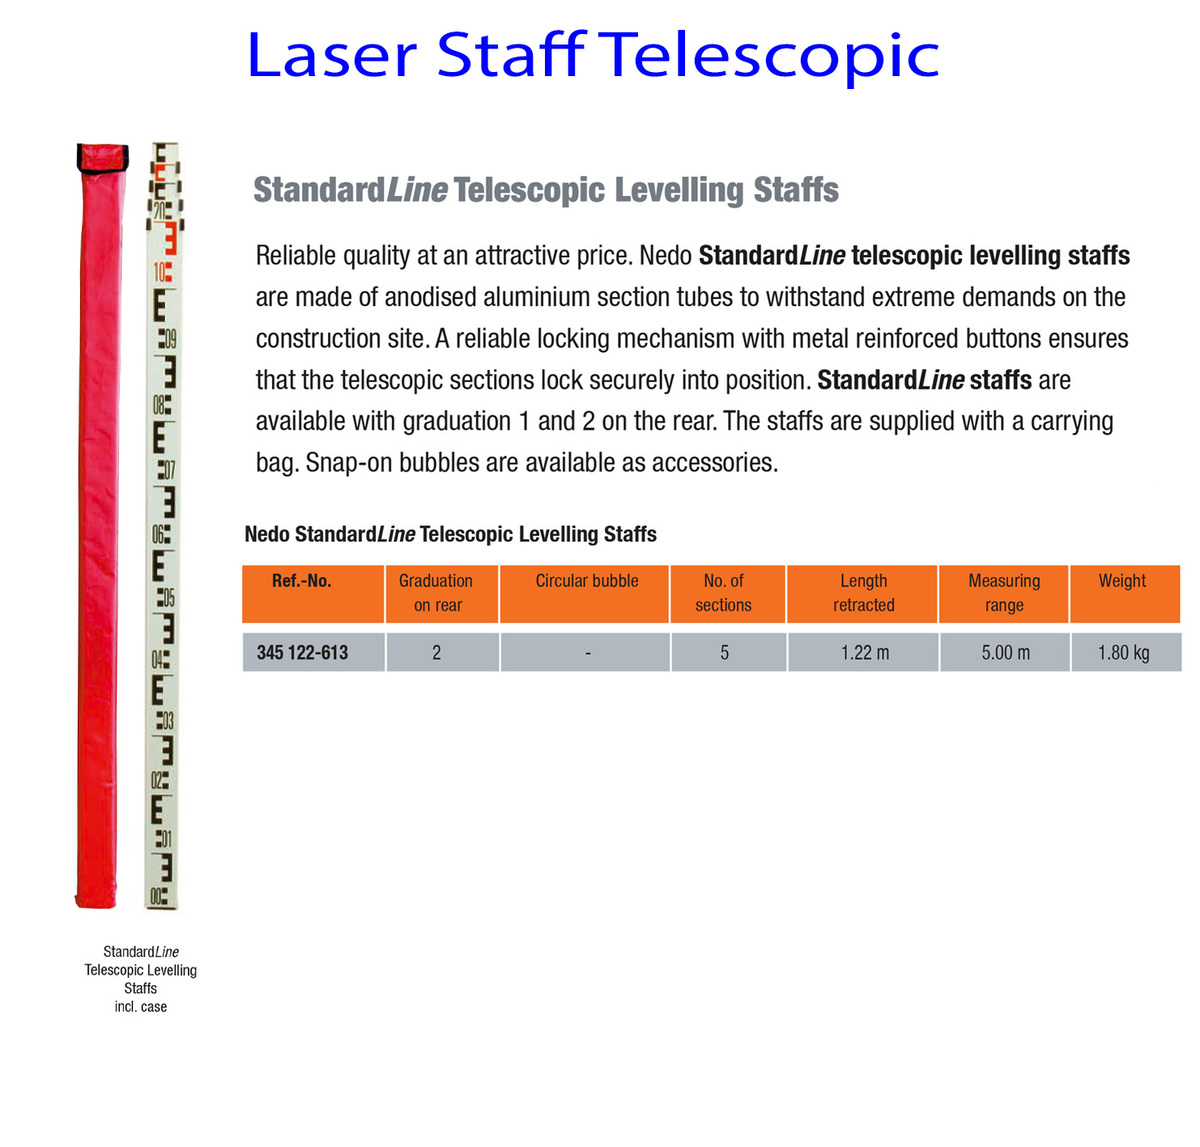 Laser-Staff-Telescopic-info.jpg#asset:76